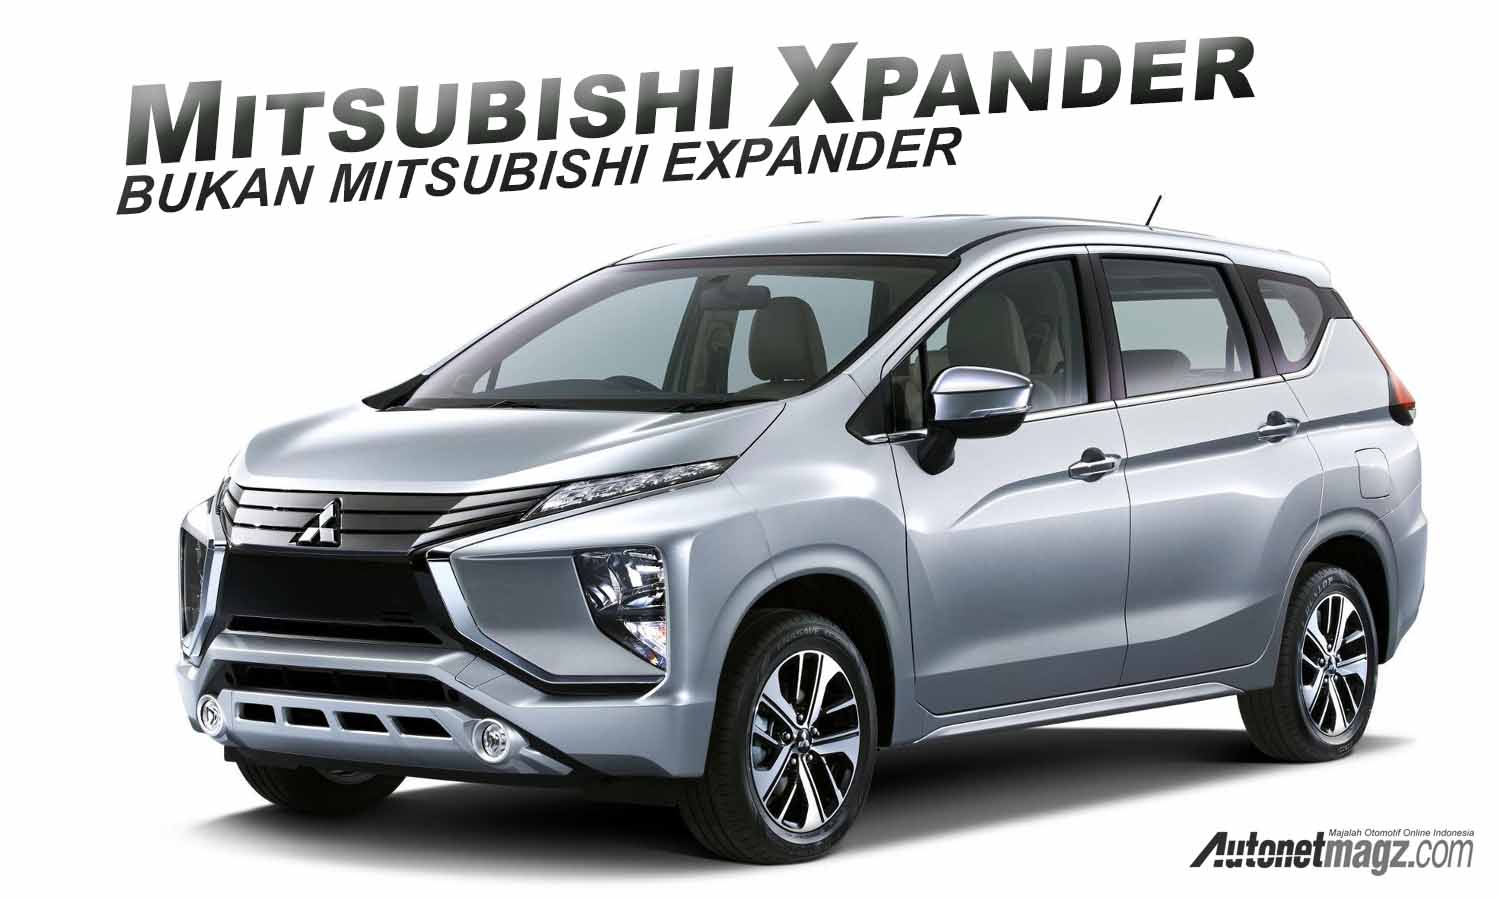 Berita, xpander: Mitsubishi Xpander, Inilah Nama Resminya! Bukan Expander!